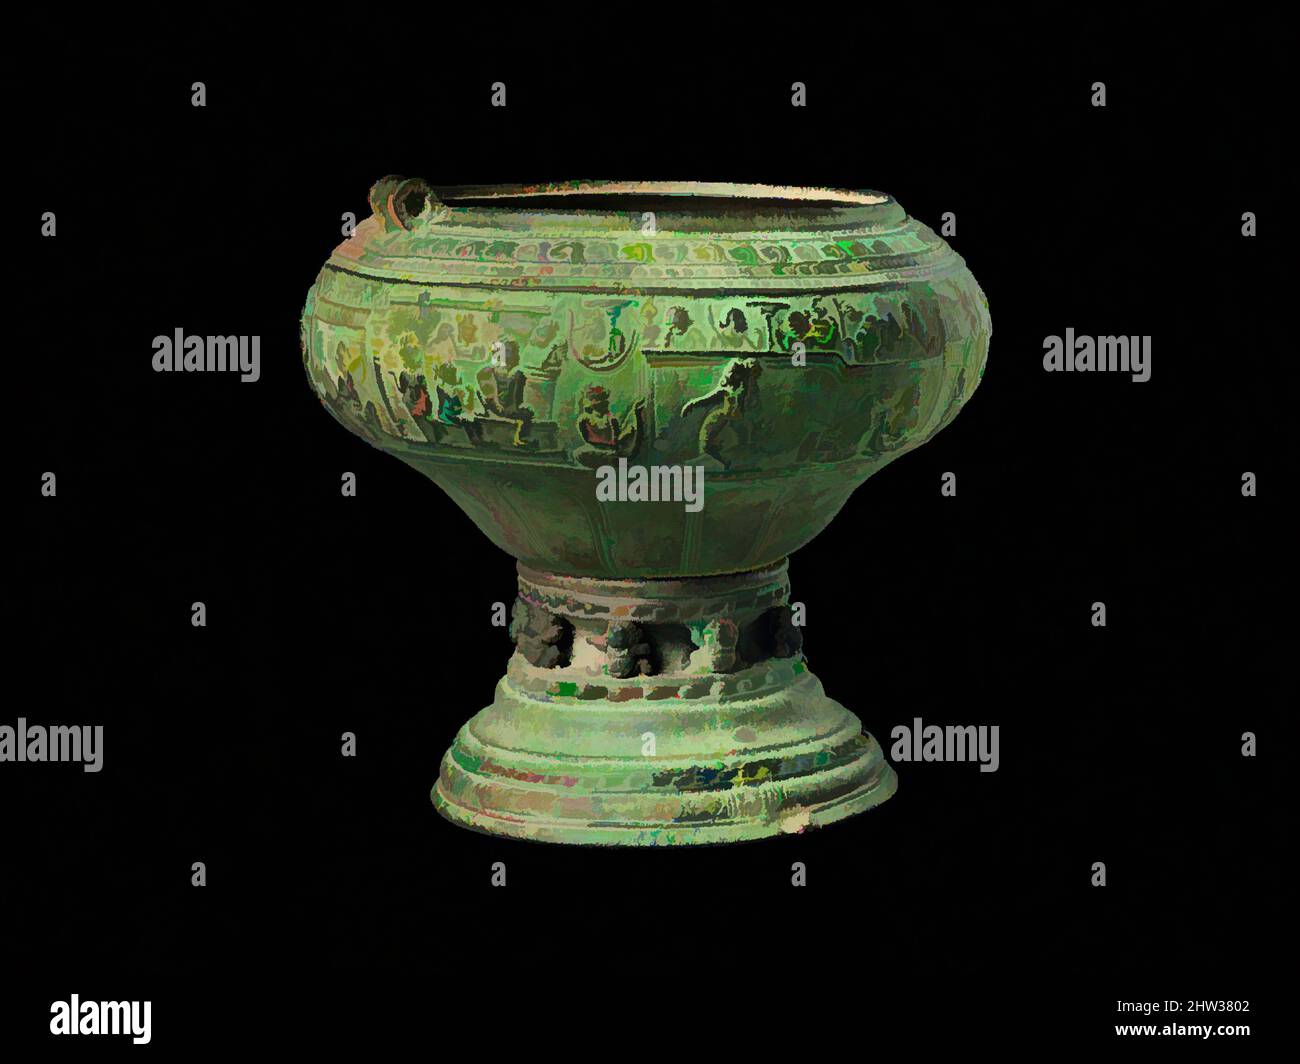 Kunst inspiriert von Footed Bowl mit Szenen aus dem Gauttila Jataka, ca. 5.–6. Jahrhundert, Südindien, wahrscheinlich Andhra Pradesh, Kupferlegierung, H. 8 1/4 Zoll (21 cm); Durchm. 8 3/4 Zoll (22,2 cm); Gewicht geschätzt 6 lbs (2,7 kg), Metallarbeiten, Dieses Schiff ist von großer Bedeutung, nicht nur für die nahe, Classic Works, die von Artotop mit einem Schuss Moderne modernisiert wurden. Formen, Farbe und Wert, auffällige visuelle Wirkung auf Kunst. Emotionen durch Freiheit von Kunstwerken auf zeitgemäße Weise. Eine zeitlose Botschaft, die eine wild kreative neue Richtung verfolgt. Künstler, die sich dem digitalen Medium zuwenden und die Artotop NFT erschaffen Stockfoto